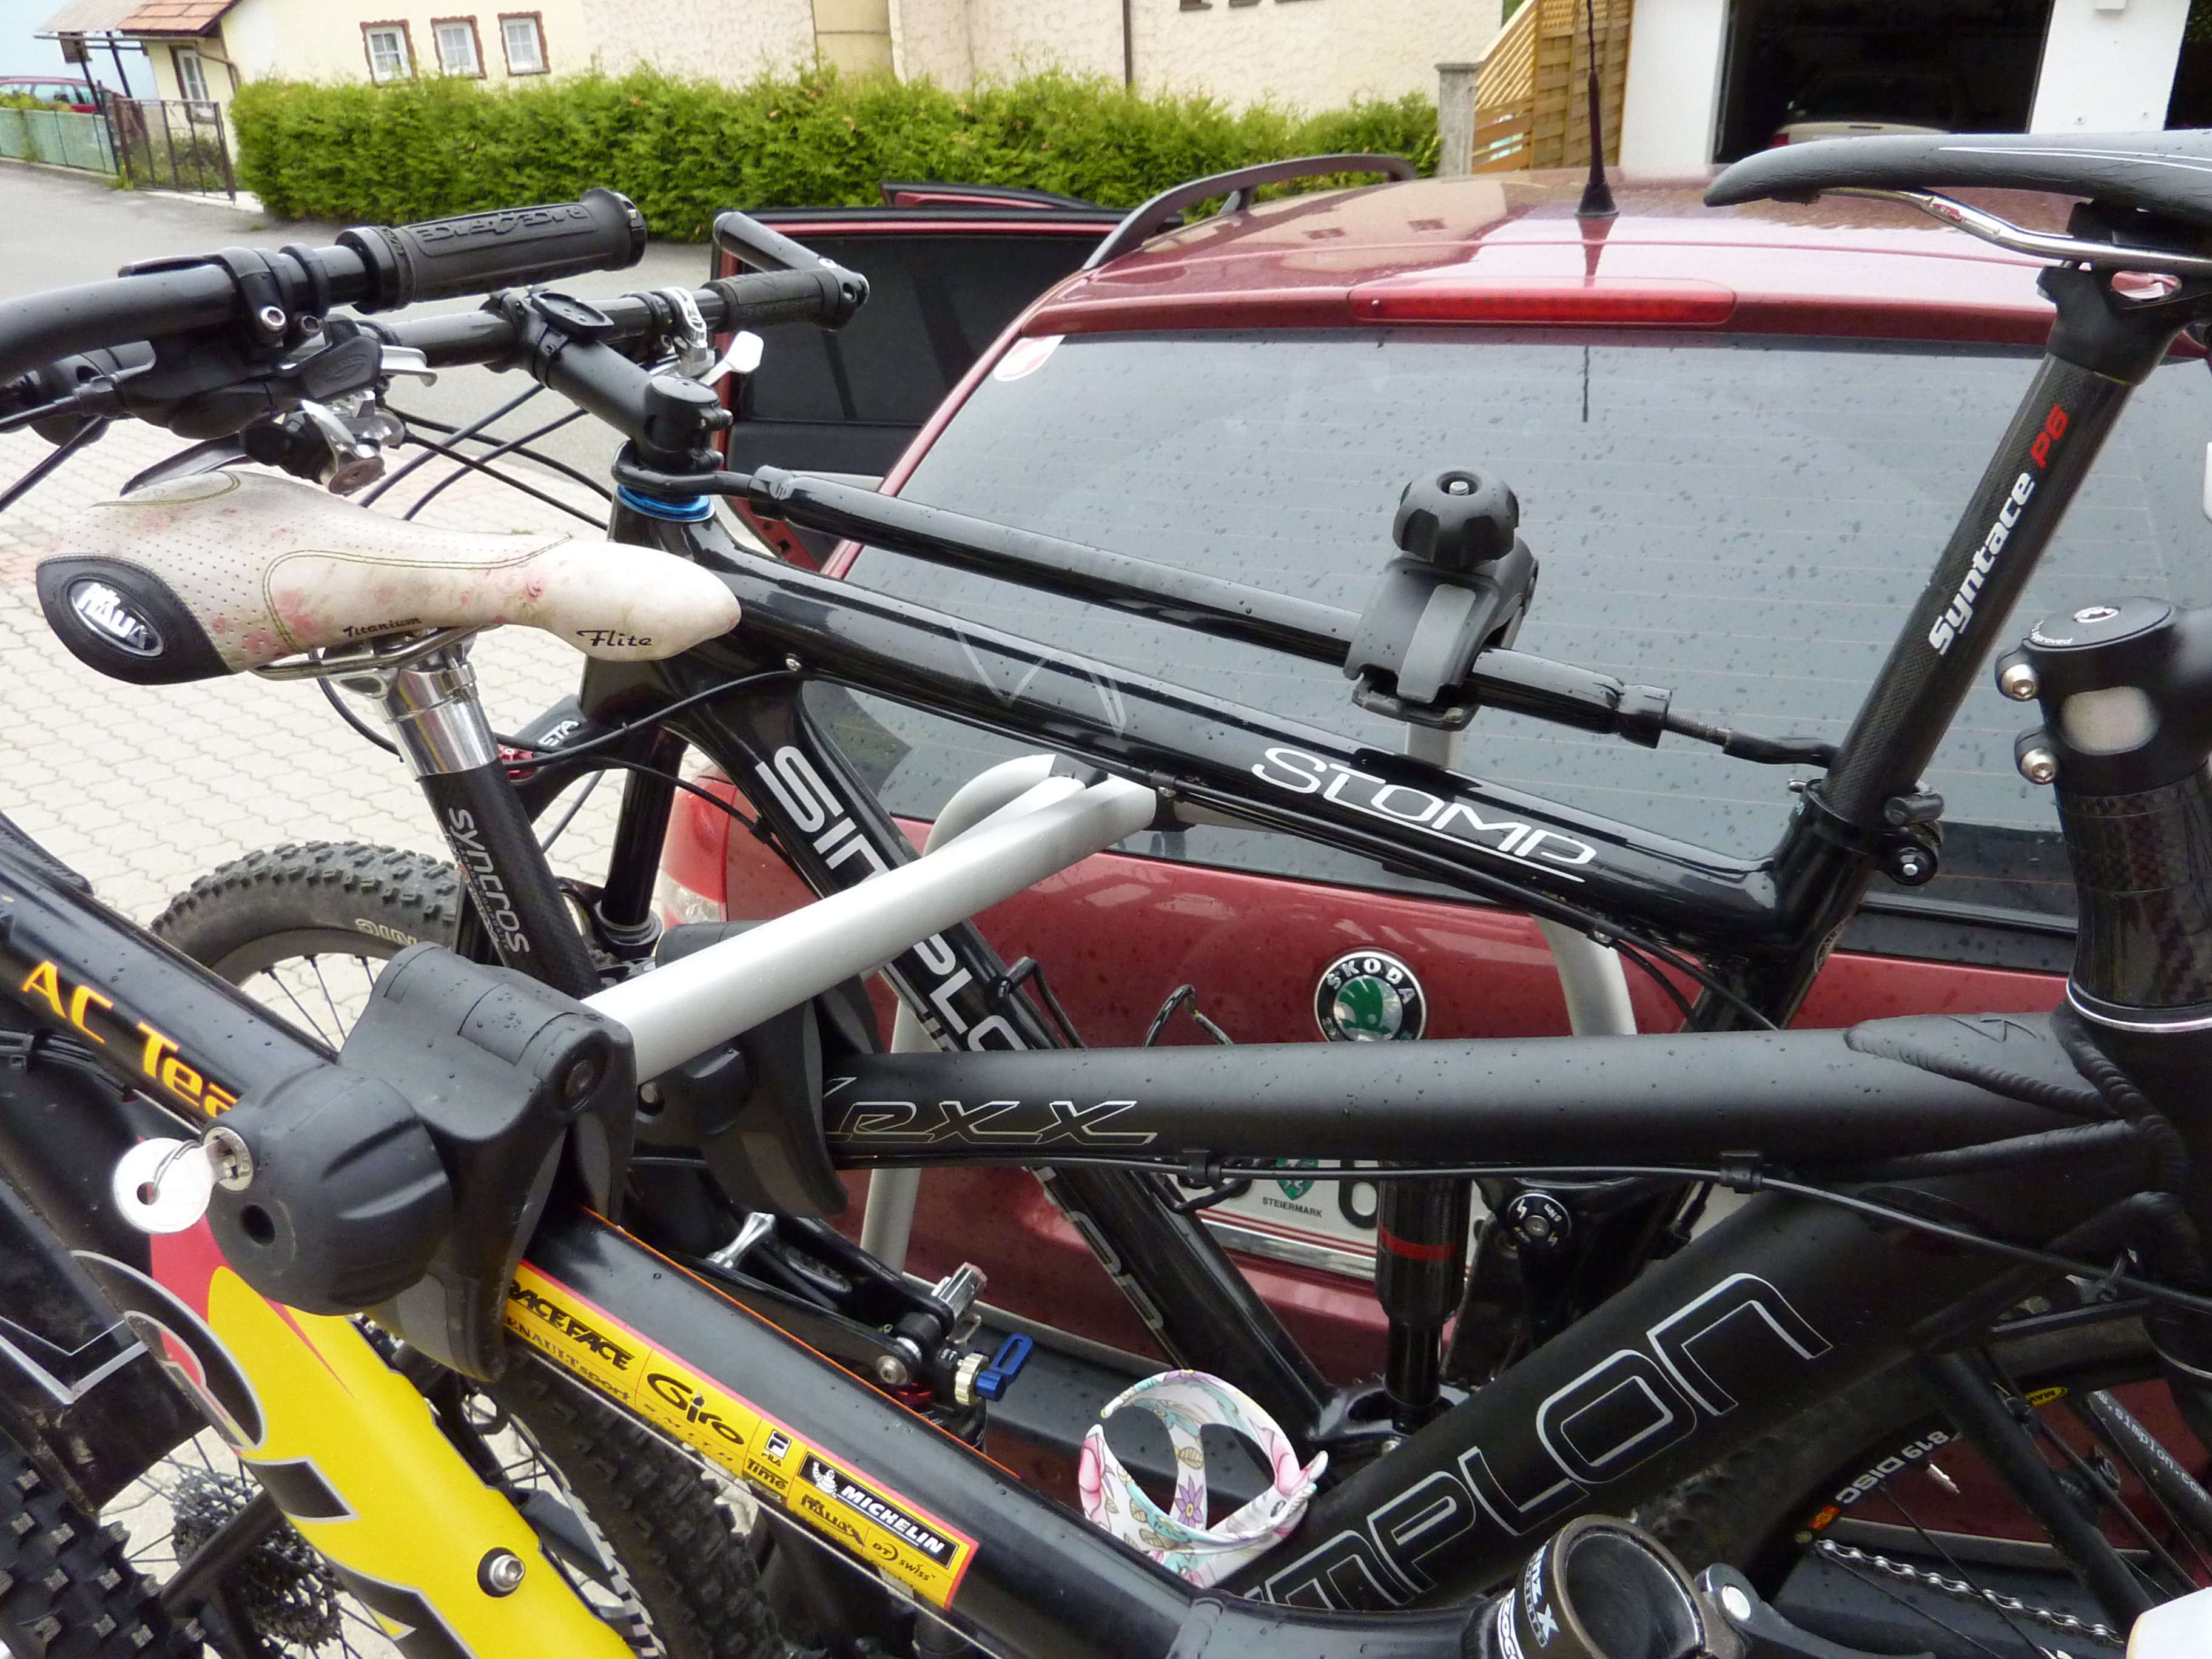 Fahrradträger: Klemmung von Carbonrahmen - Ideen? - Sonstige Bikethemen -  Bikeboard